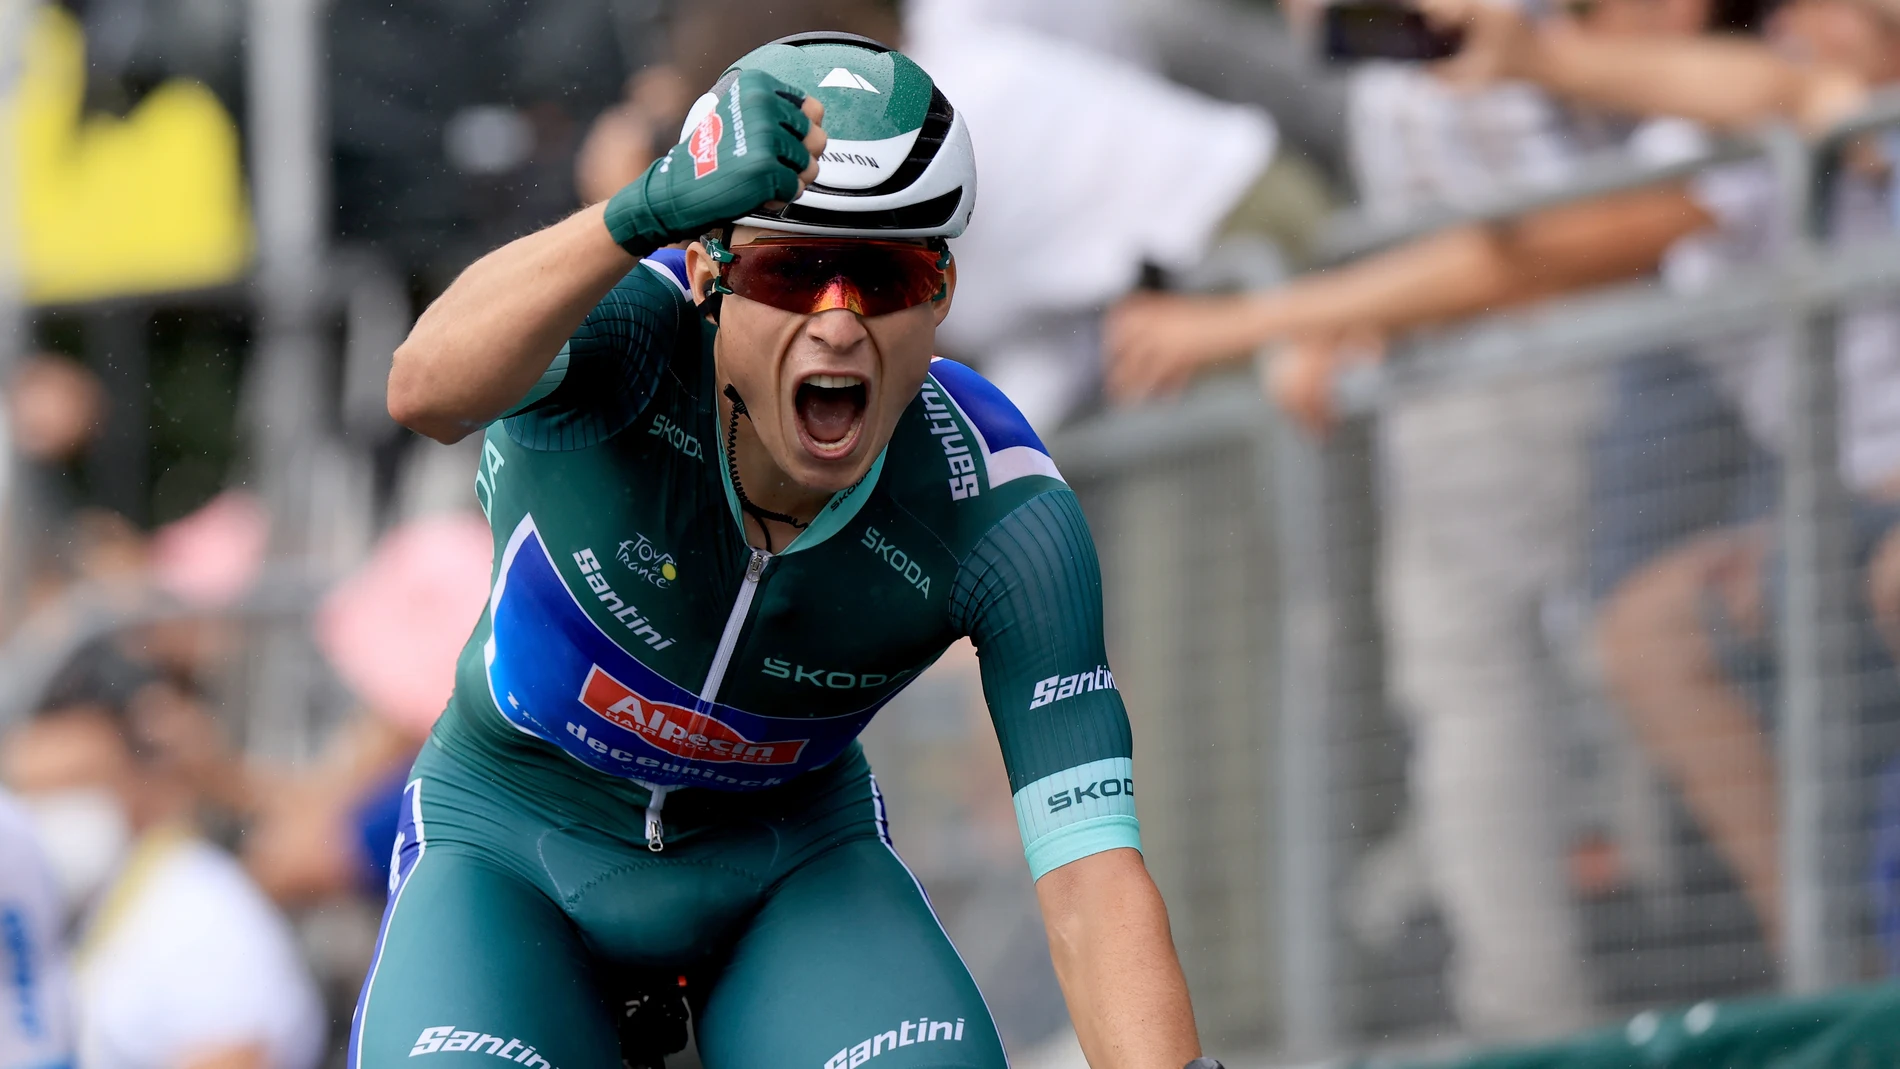 El ciclista belga Jasper Philipsen gana la 11ª etapa del Tour de Francia 